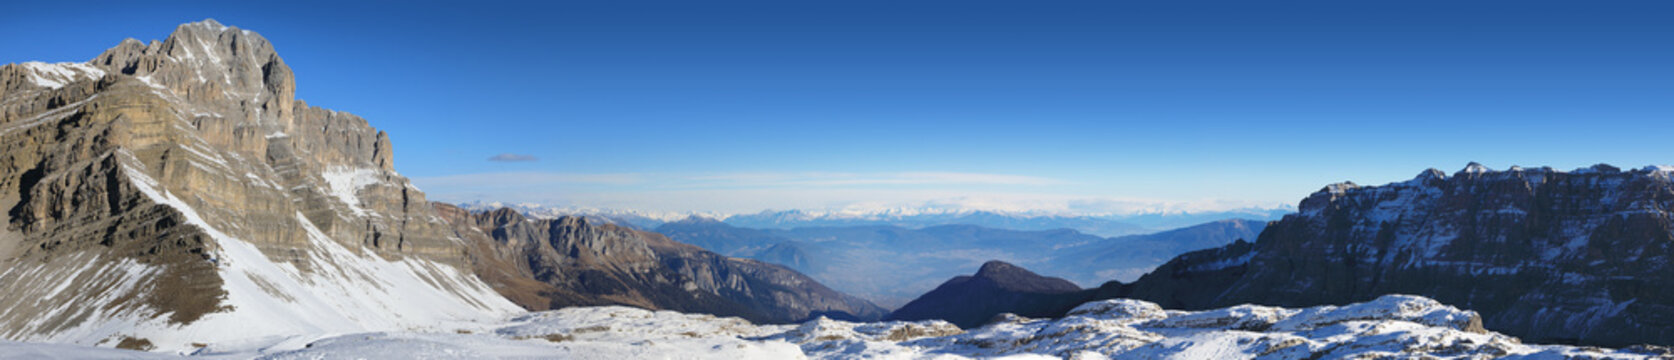 Dolomite Alps, Italy